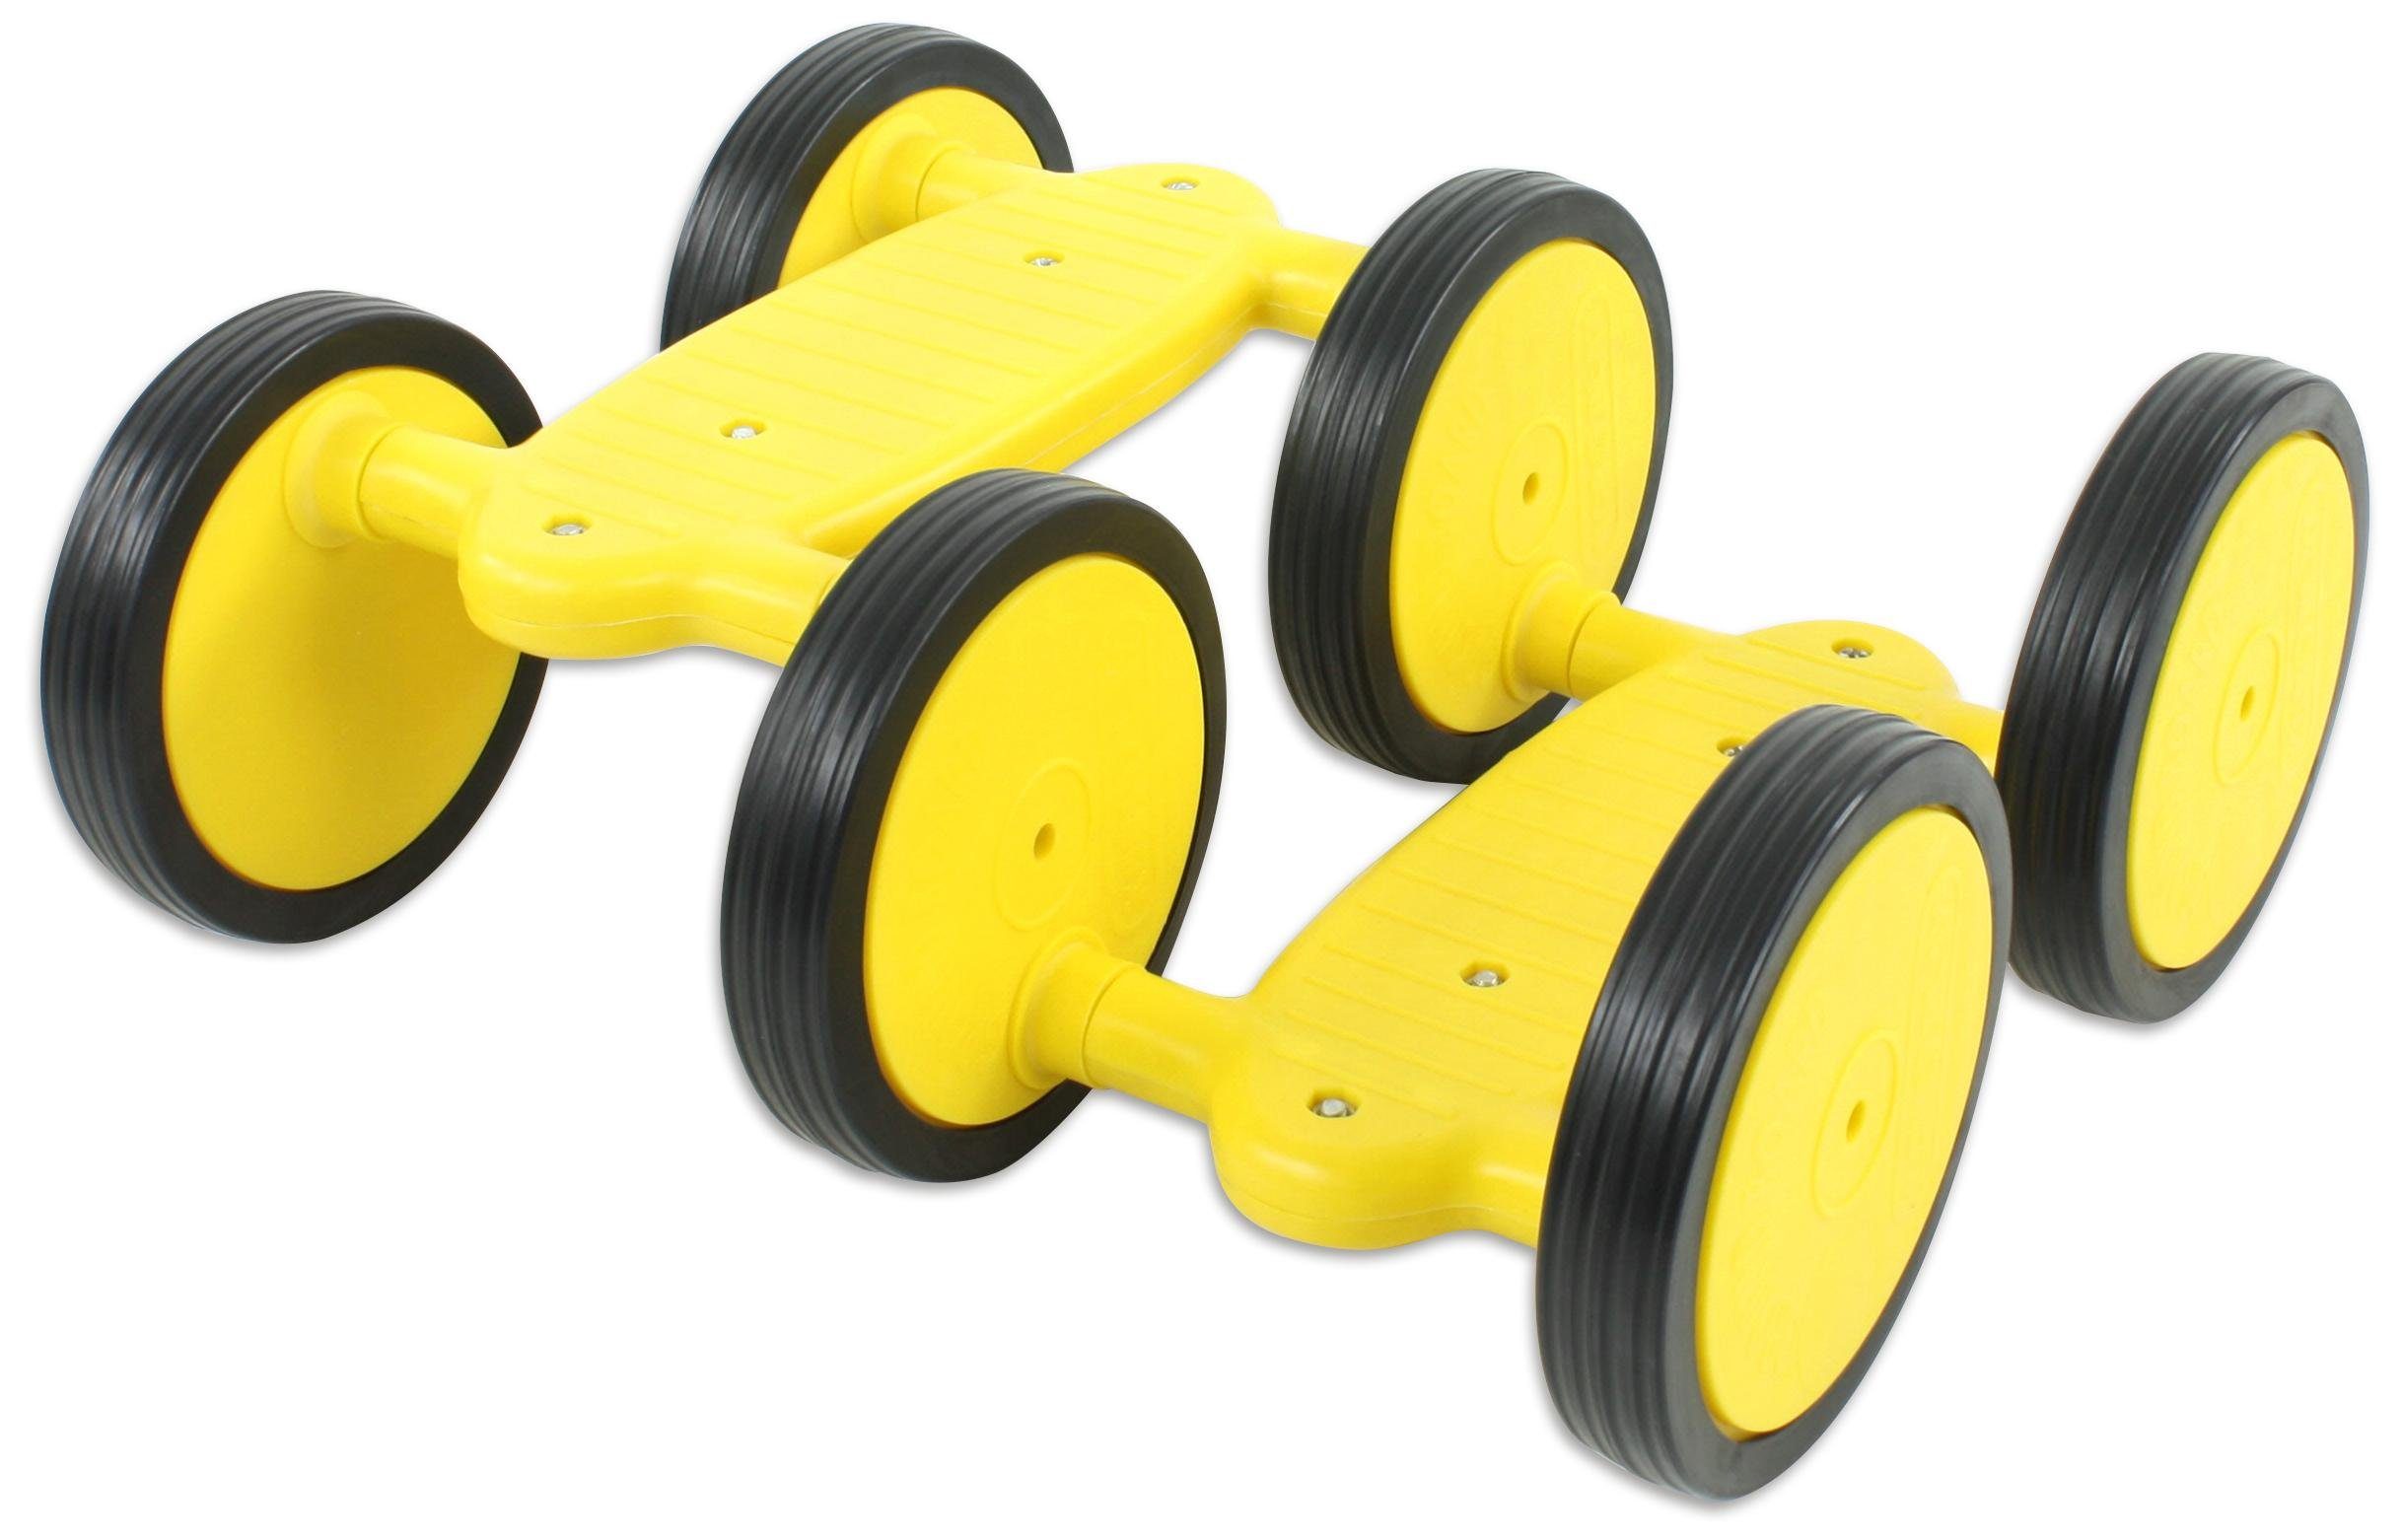 Betzold Sport Gleichgewichtstrainer Maxi-Roller mit 6 Rollen - Kinderfahrzeug Geschicklichkeit, Belastbar bis 100 kg gelb